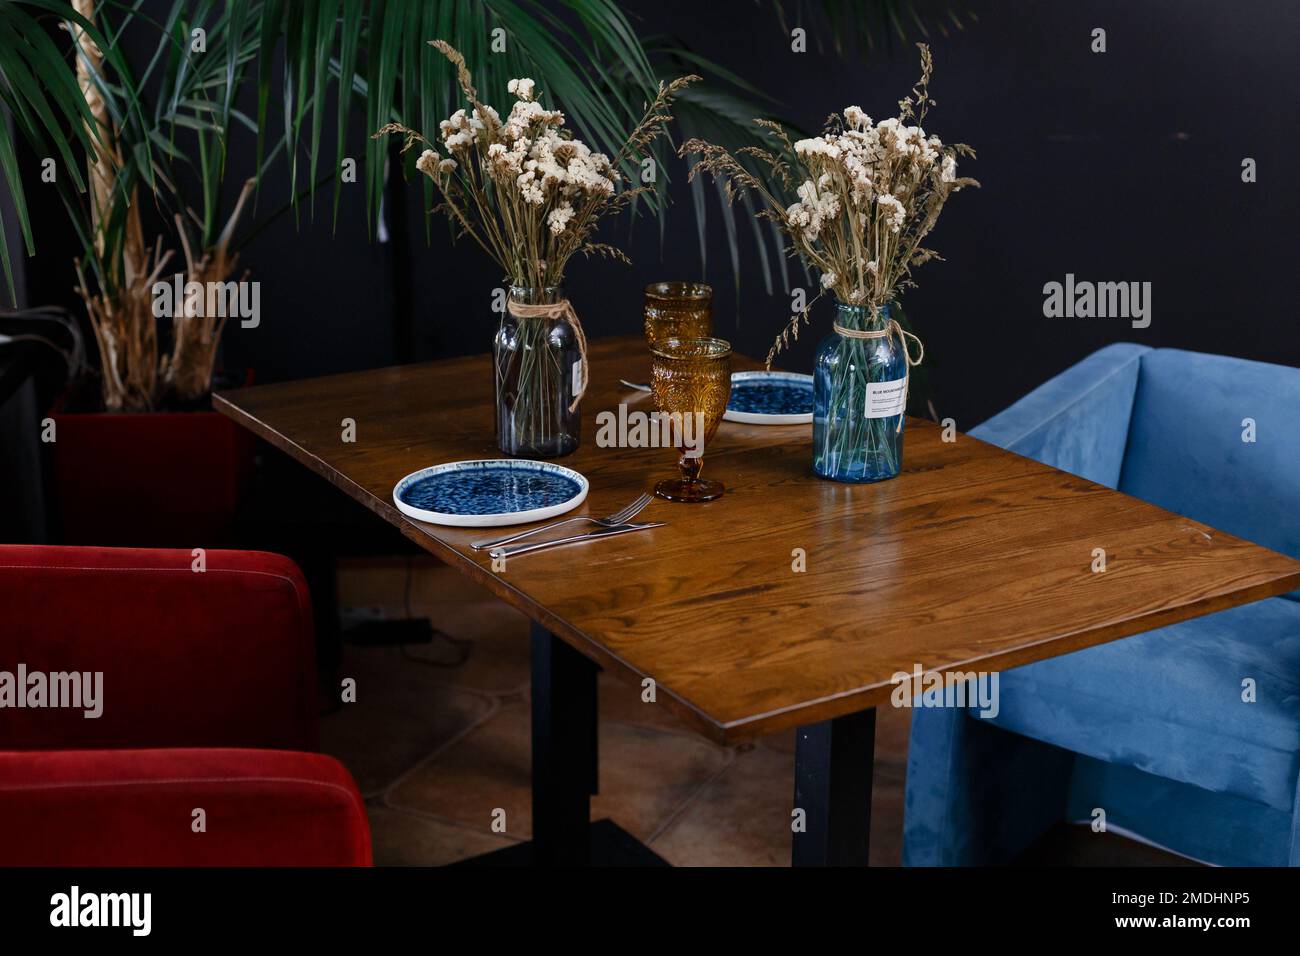 Vase floral artificiel sur le dessus de table sur une image floue de l'arrière-plan moderne du lieu de travail. Photo de haute qualité Banque D'Images